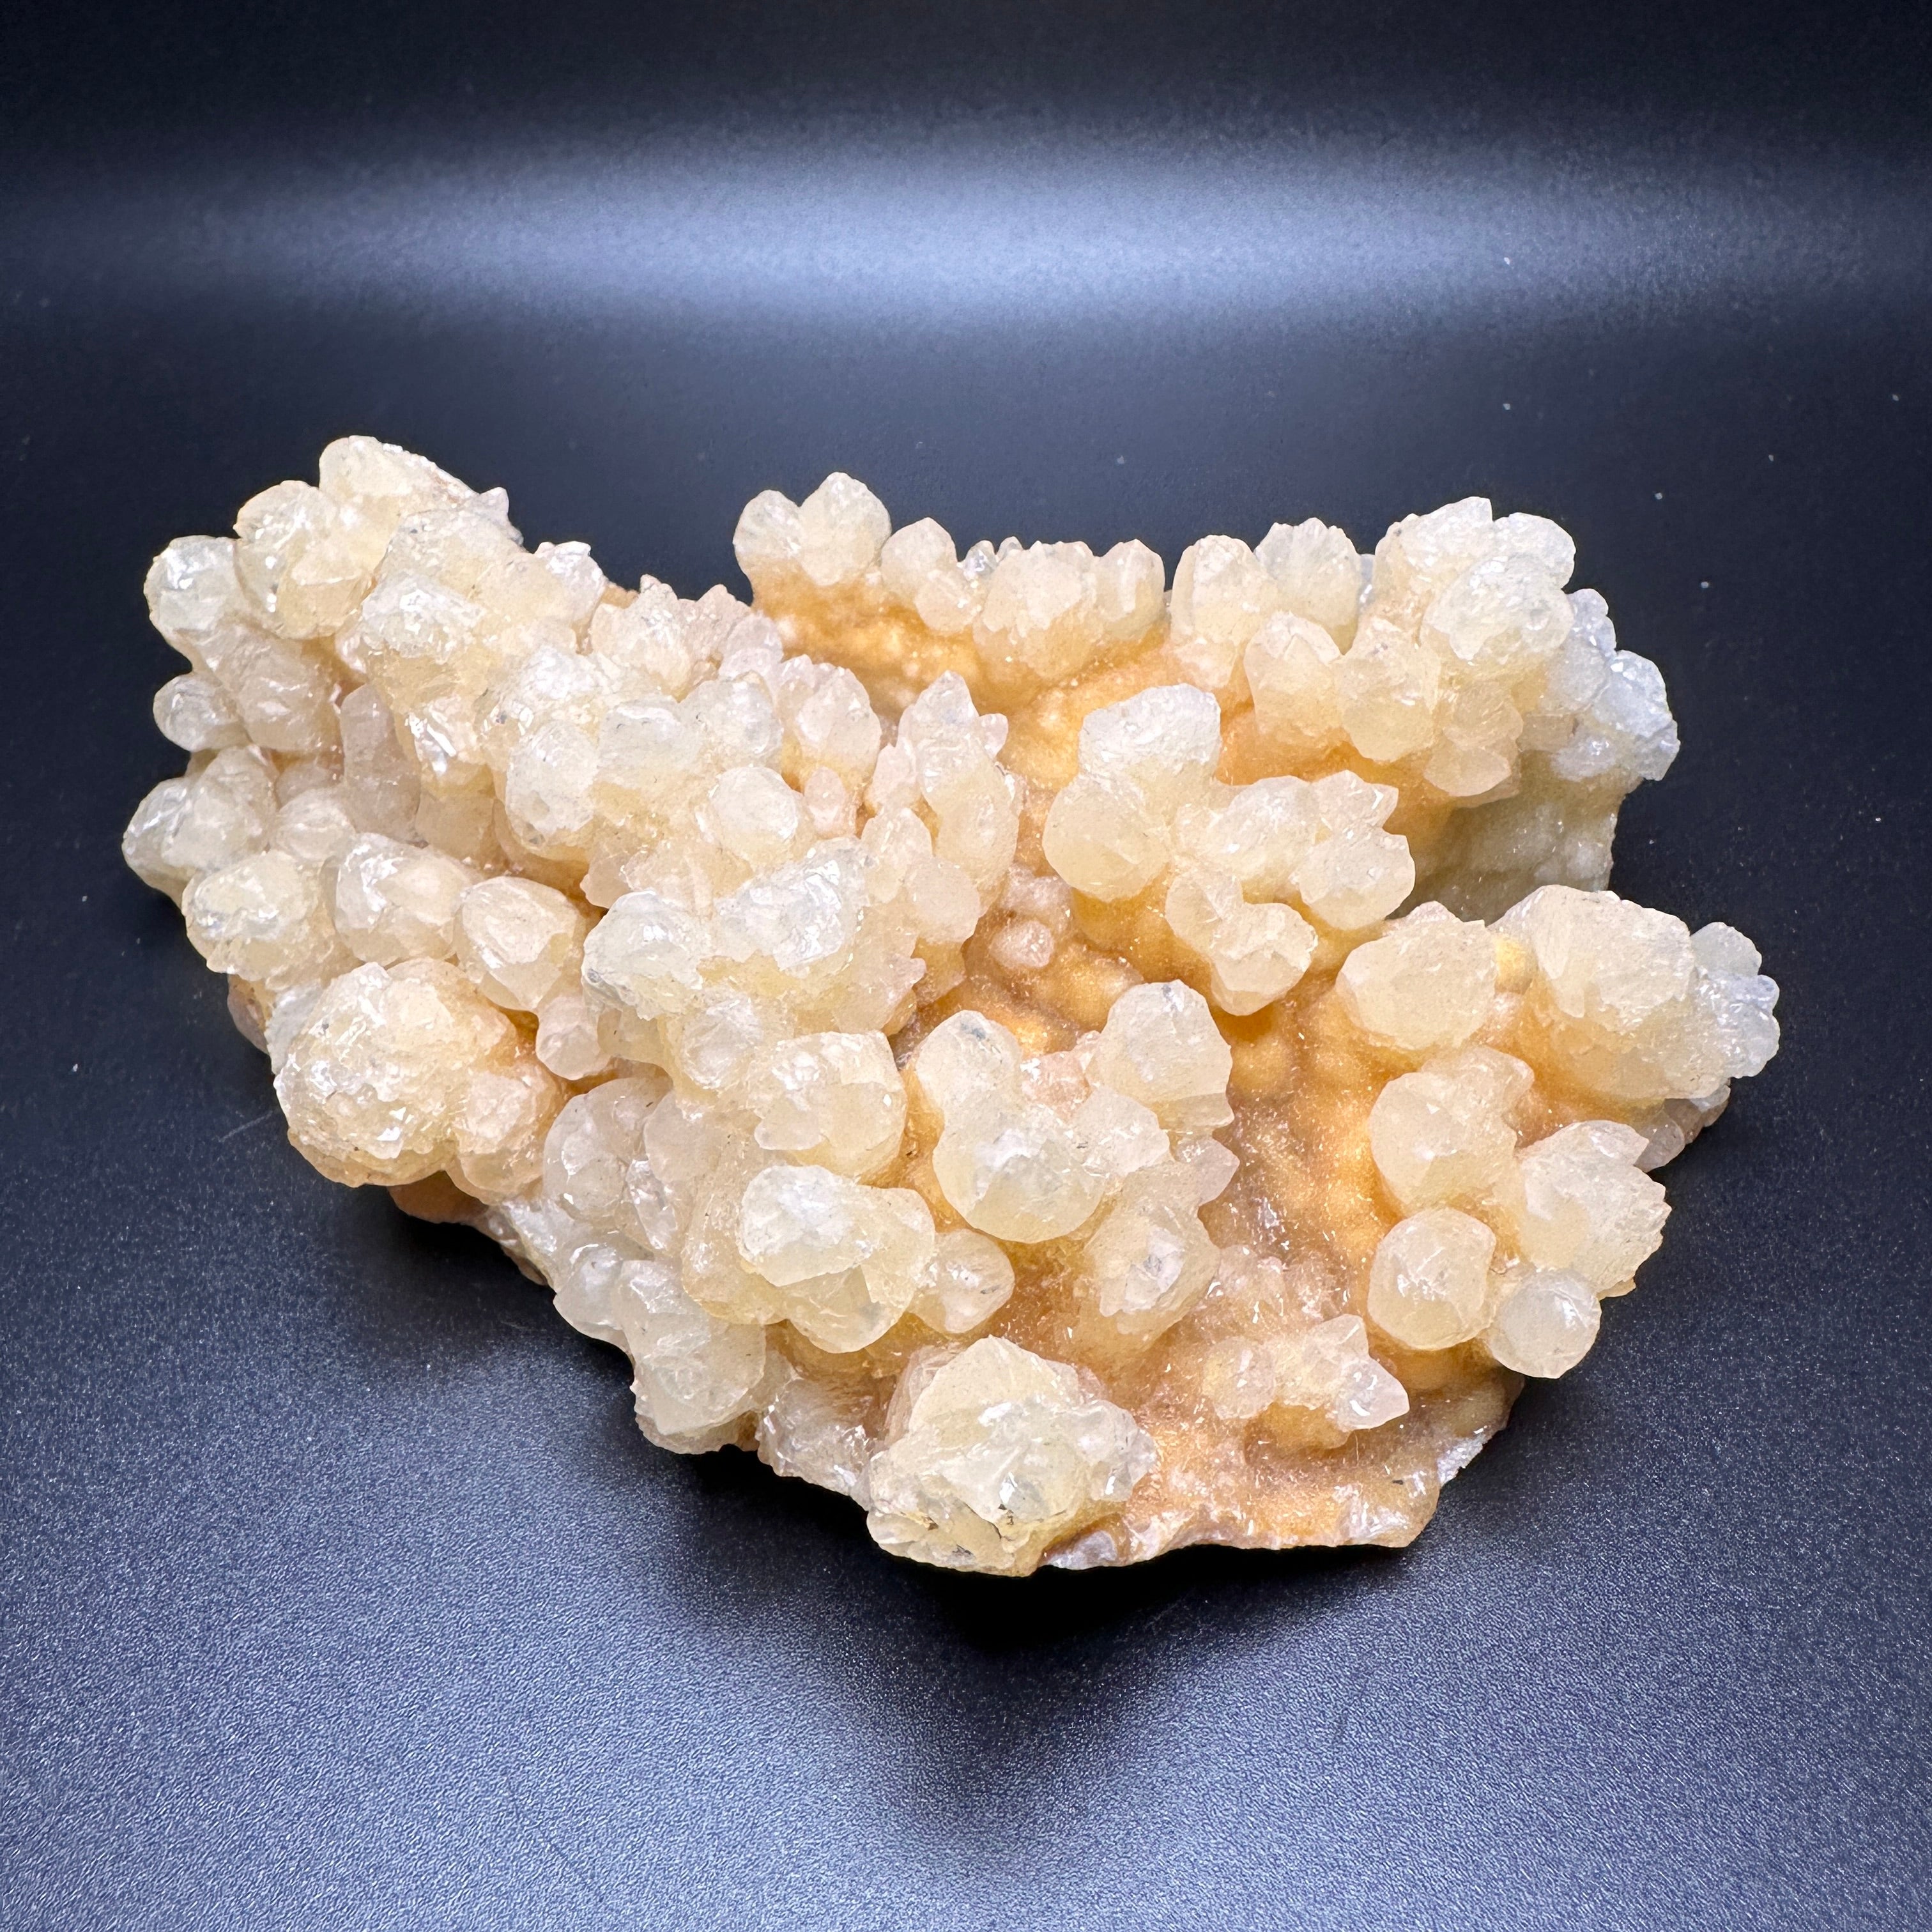 Cave Calcite Aragonite Raw Mineral Specimen UV Reactive